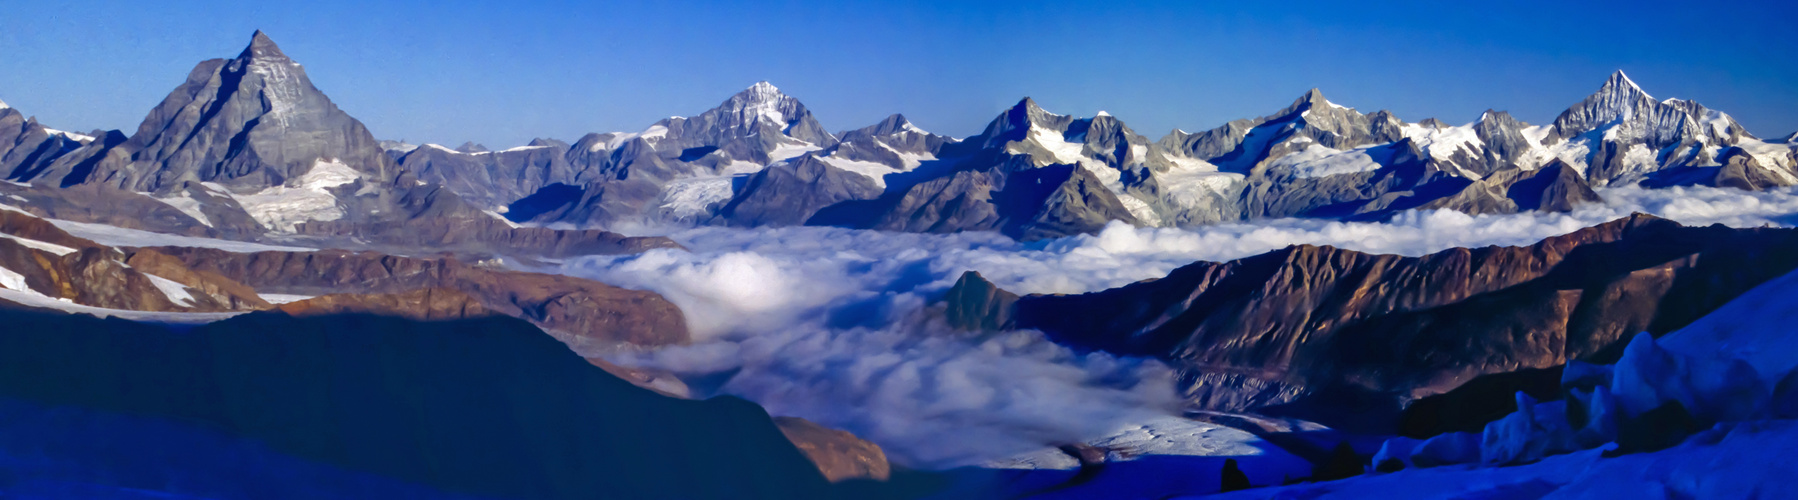 Zermatt unter Wolken